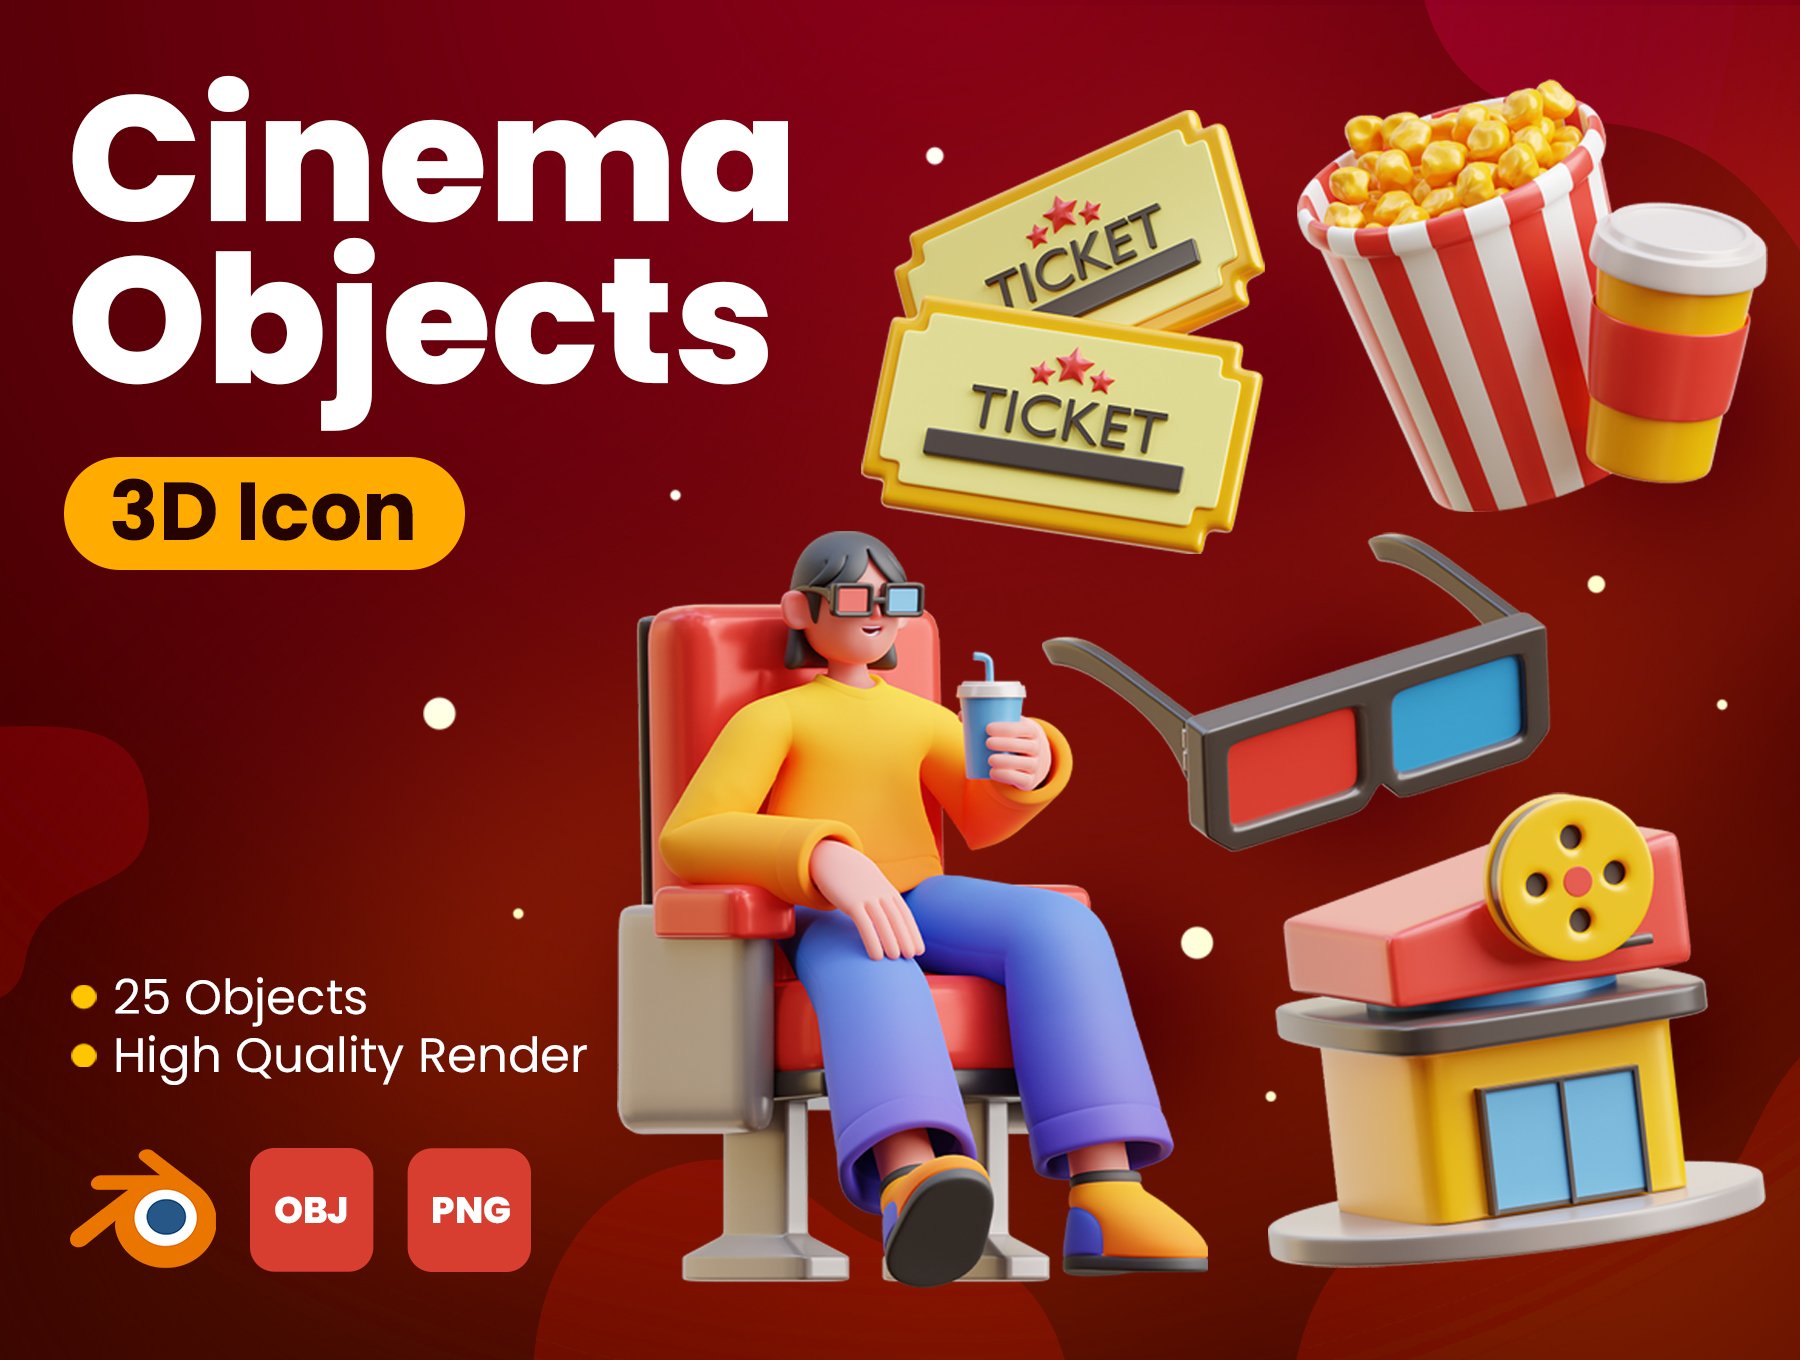 高质量三维渲染影音播放电影院主题3D插画图标素材合辑 Cinema 3D Icons 图标素材 第1张